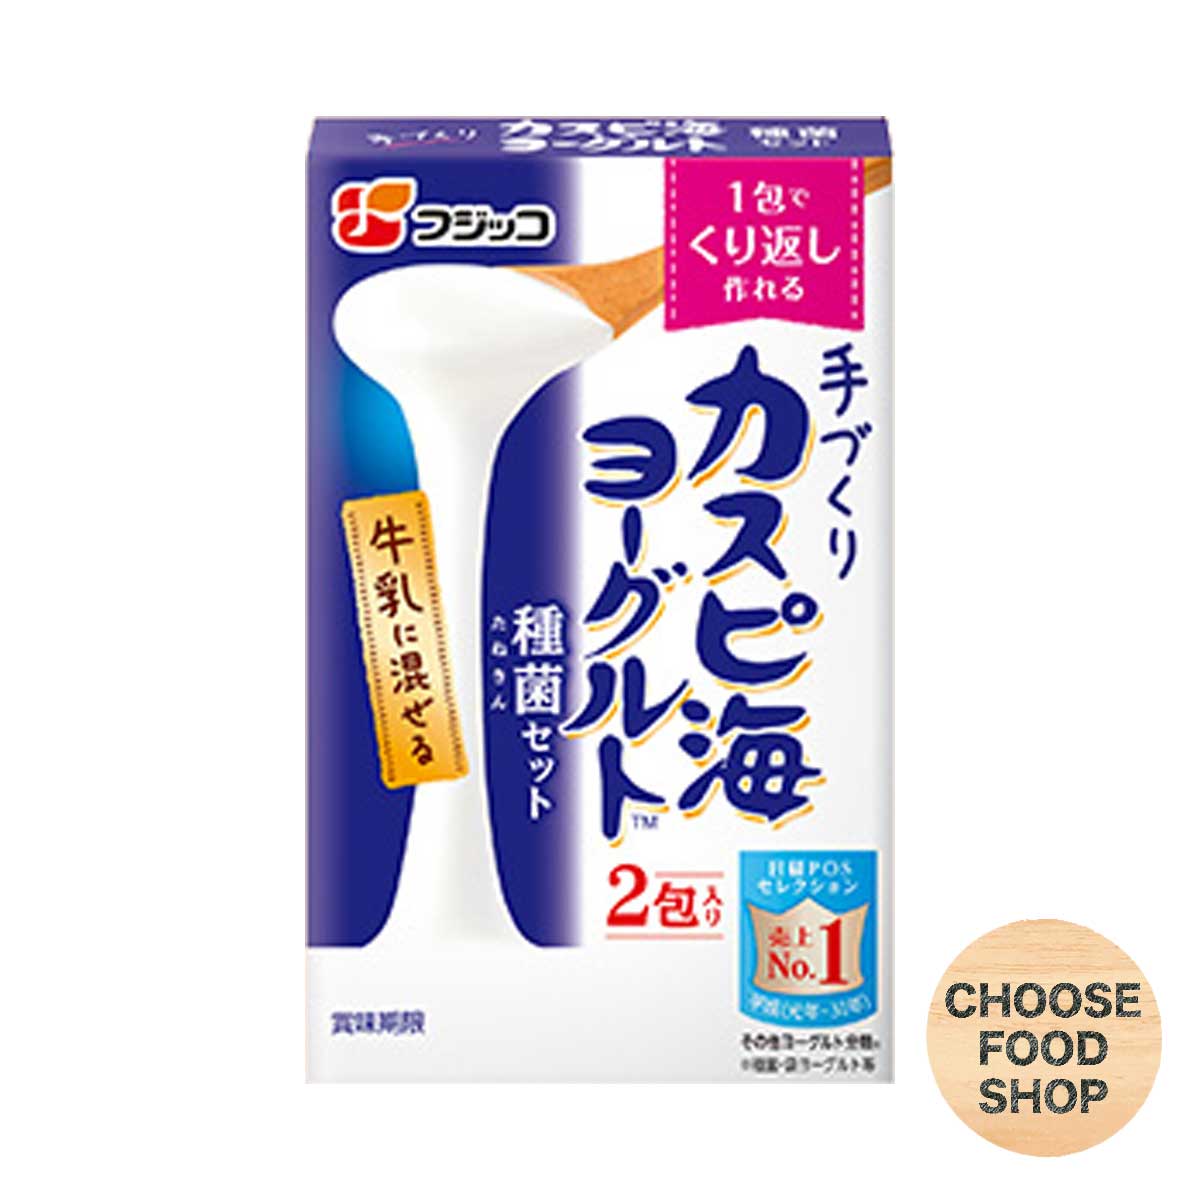 数量限定アウトレット最安価格 日本メーカー新品 全国送料無料キャンペーン中です フジッコ カスピ海ヨーグルト 種菌セット 3g×2包入り 全国送料無料